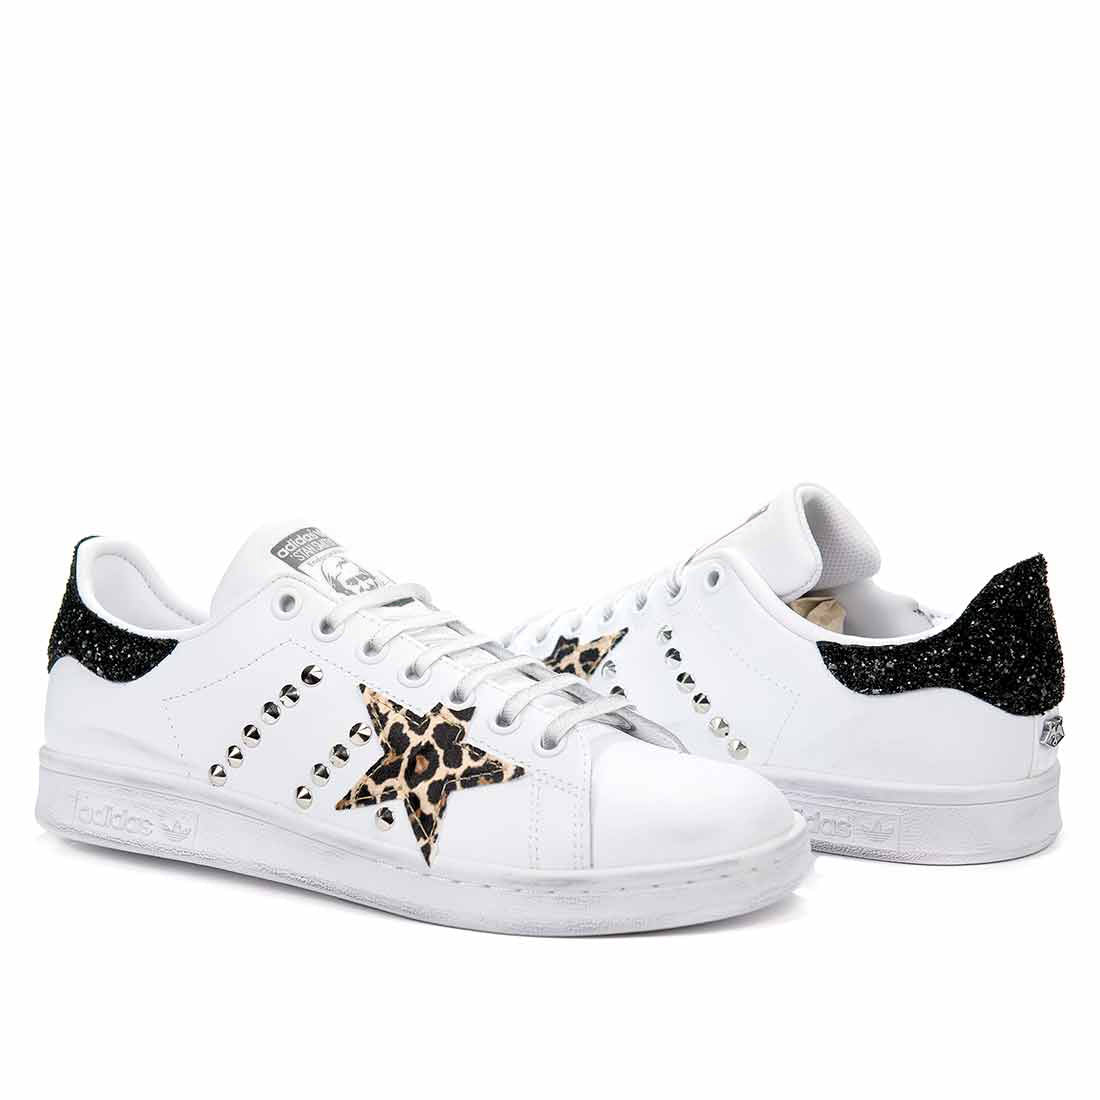 Adidas Stan Smith leopardate con glitter nero